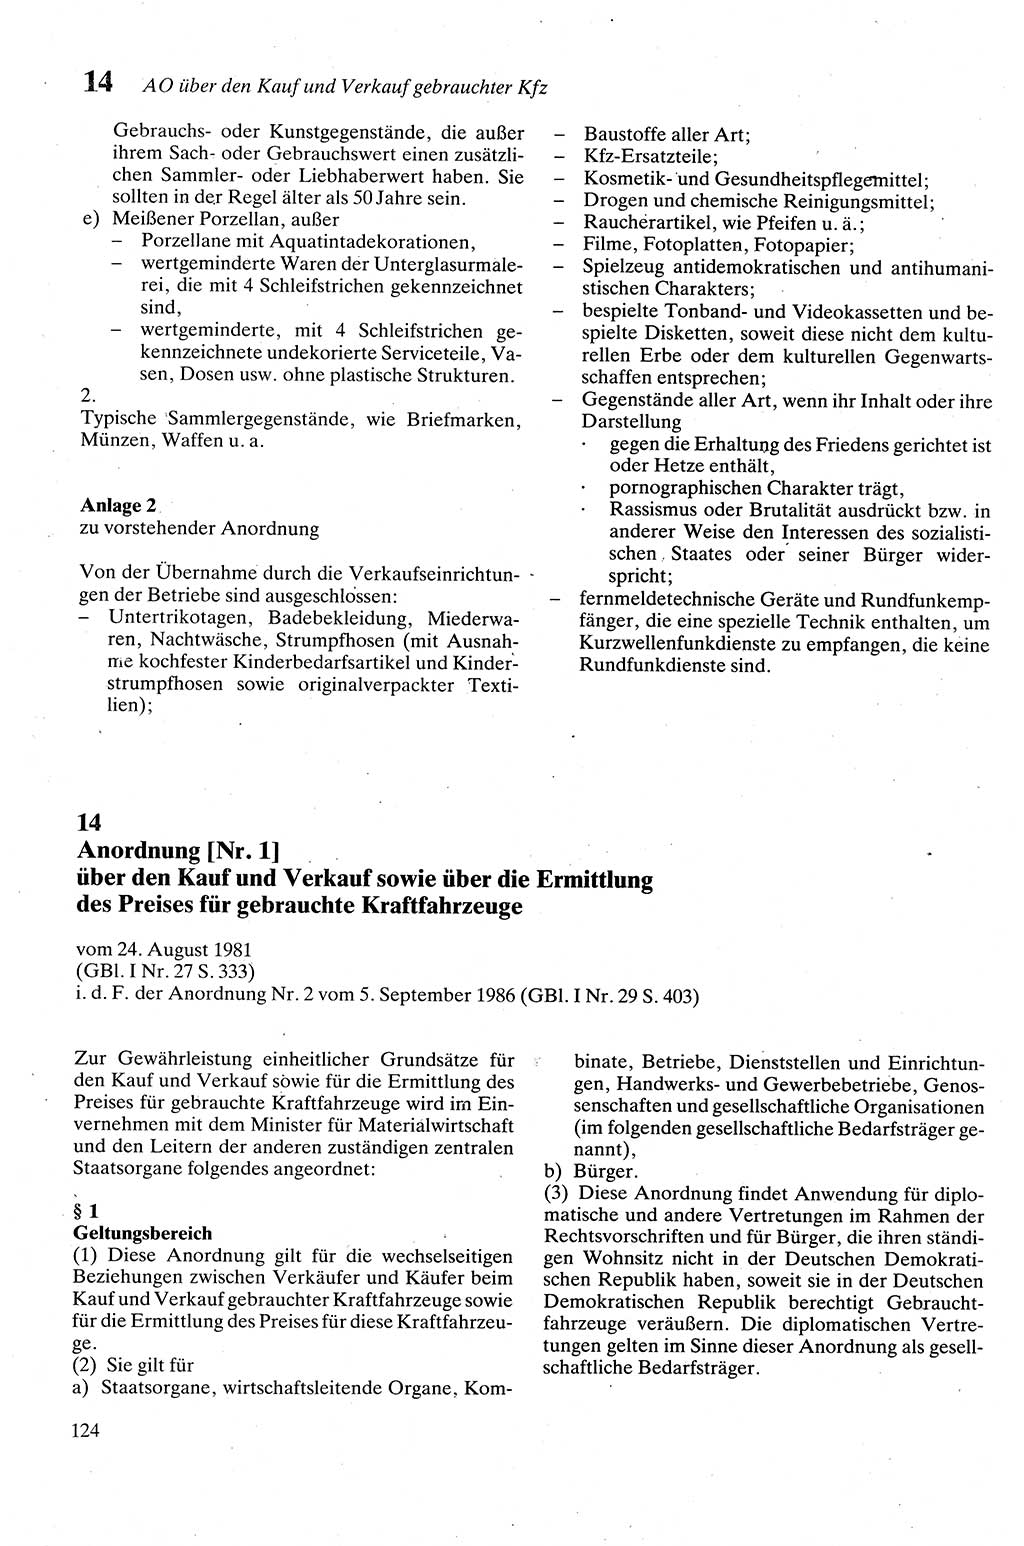 Zivilgesetzbuch (ZVG) sowie angrenzende Gesetze und Bestimmungen [Deutsche Demokratische Republik (DDR)] 1975, Seite 124 (ZGB Ges. Best. DDR 1975, S. 124)